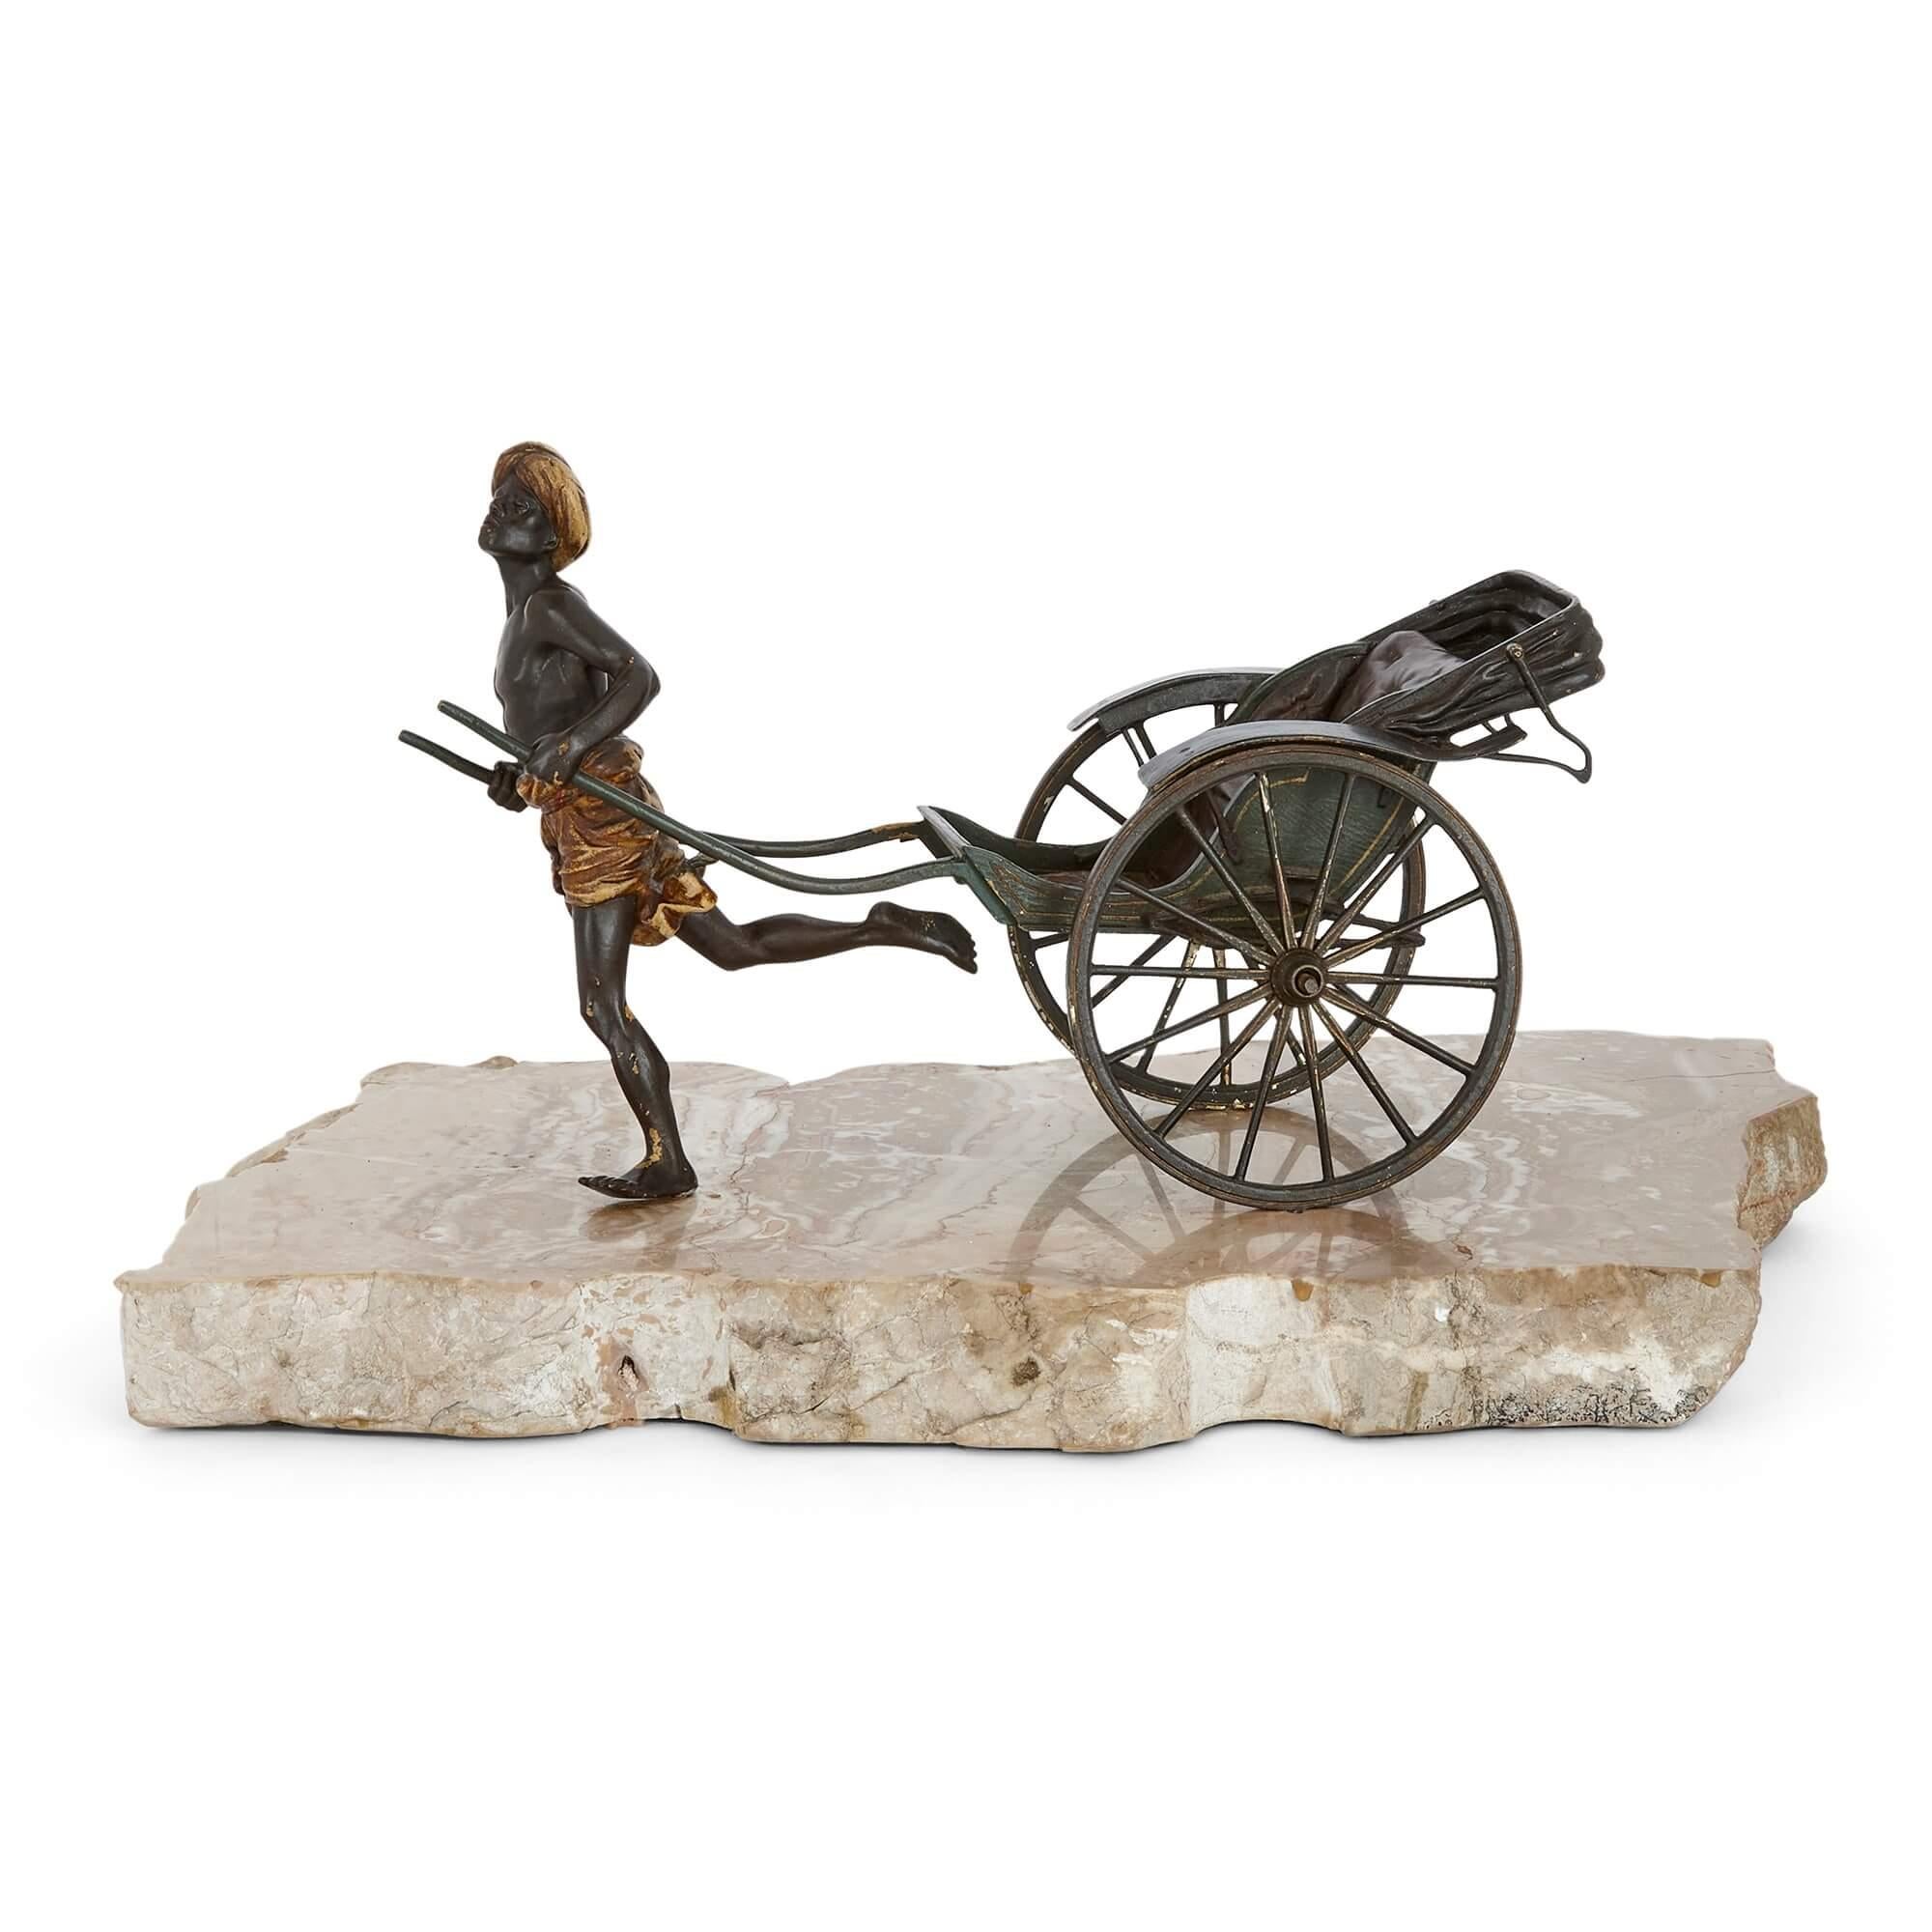 Antike kaltgemalte Bronze einer gezogenen Rikscha von Bergman 
Österreicher, um 1910
Höhe 19cm, Breite 37cm, Tiefe 20cm

Diese ungewöhnliche, kalt bemalte Bronze zeigt einen laufenden arabischen Mann, der einen altmodischen Rikscha-Wagen hinter sich